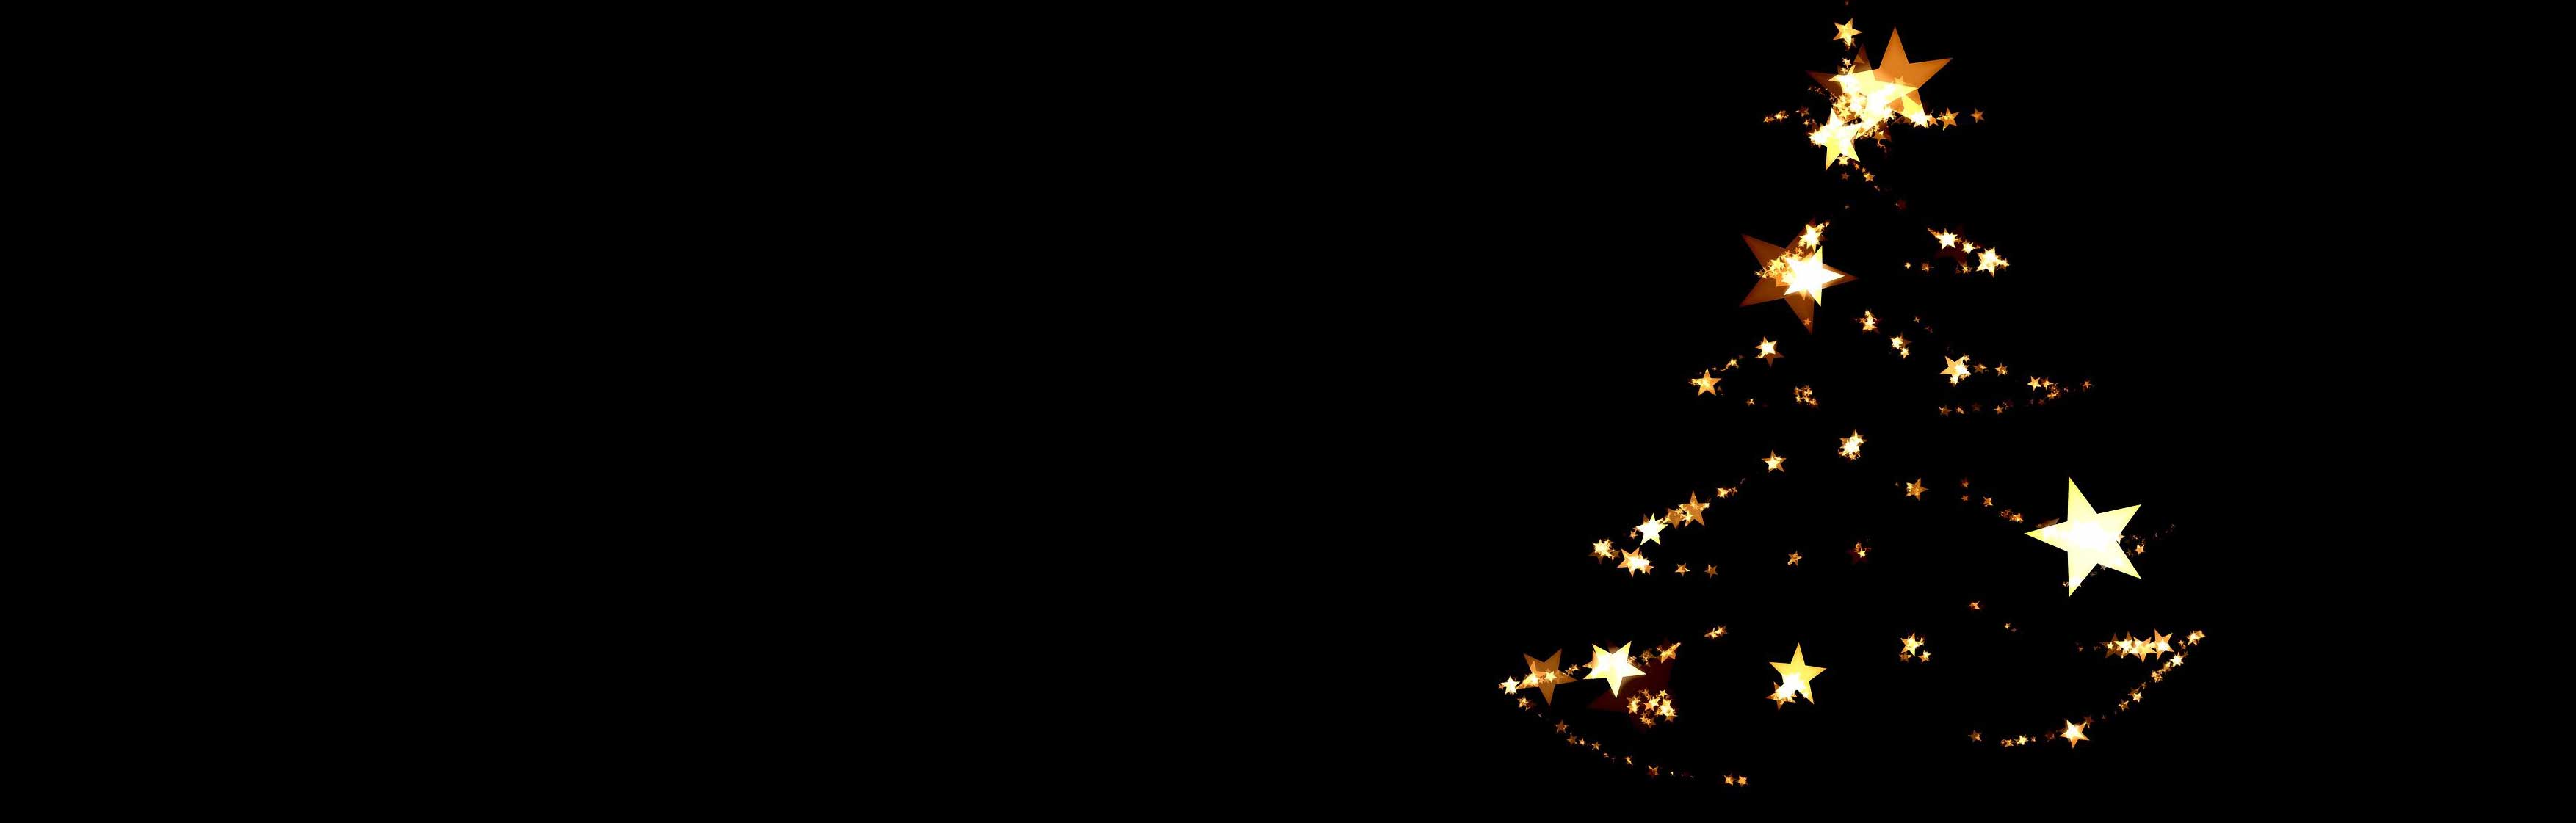 Blasorchesternoten Am Weihnachtsbaume die Lichter brennen - Titelbild